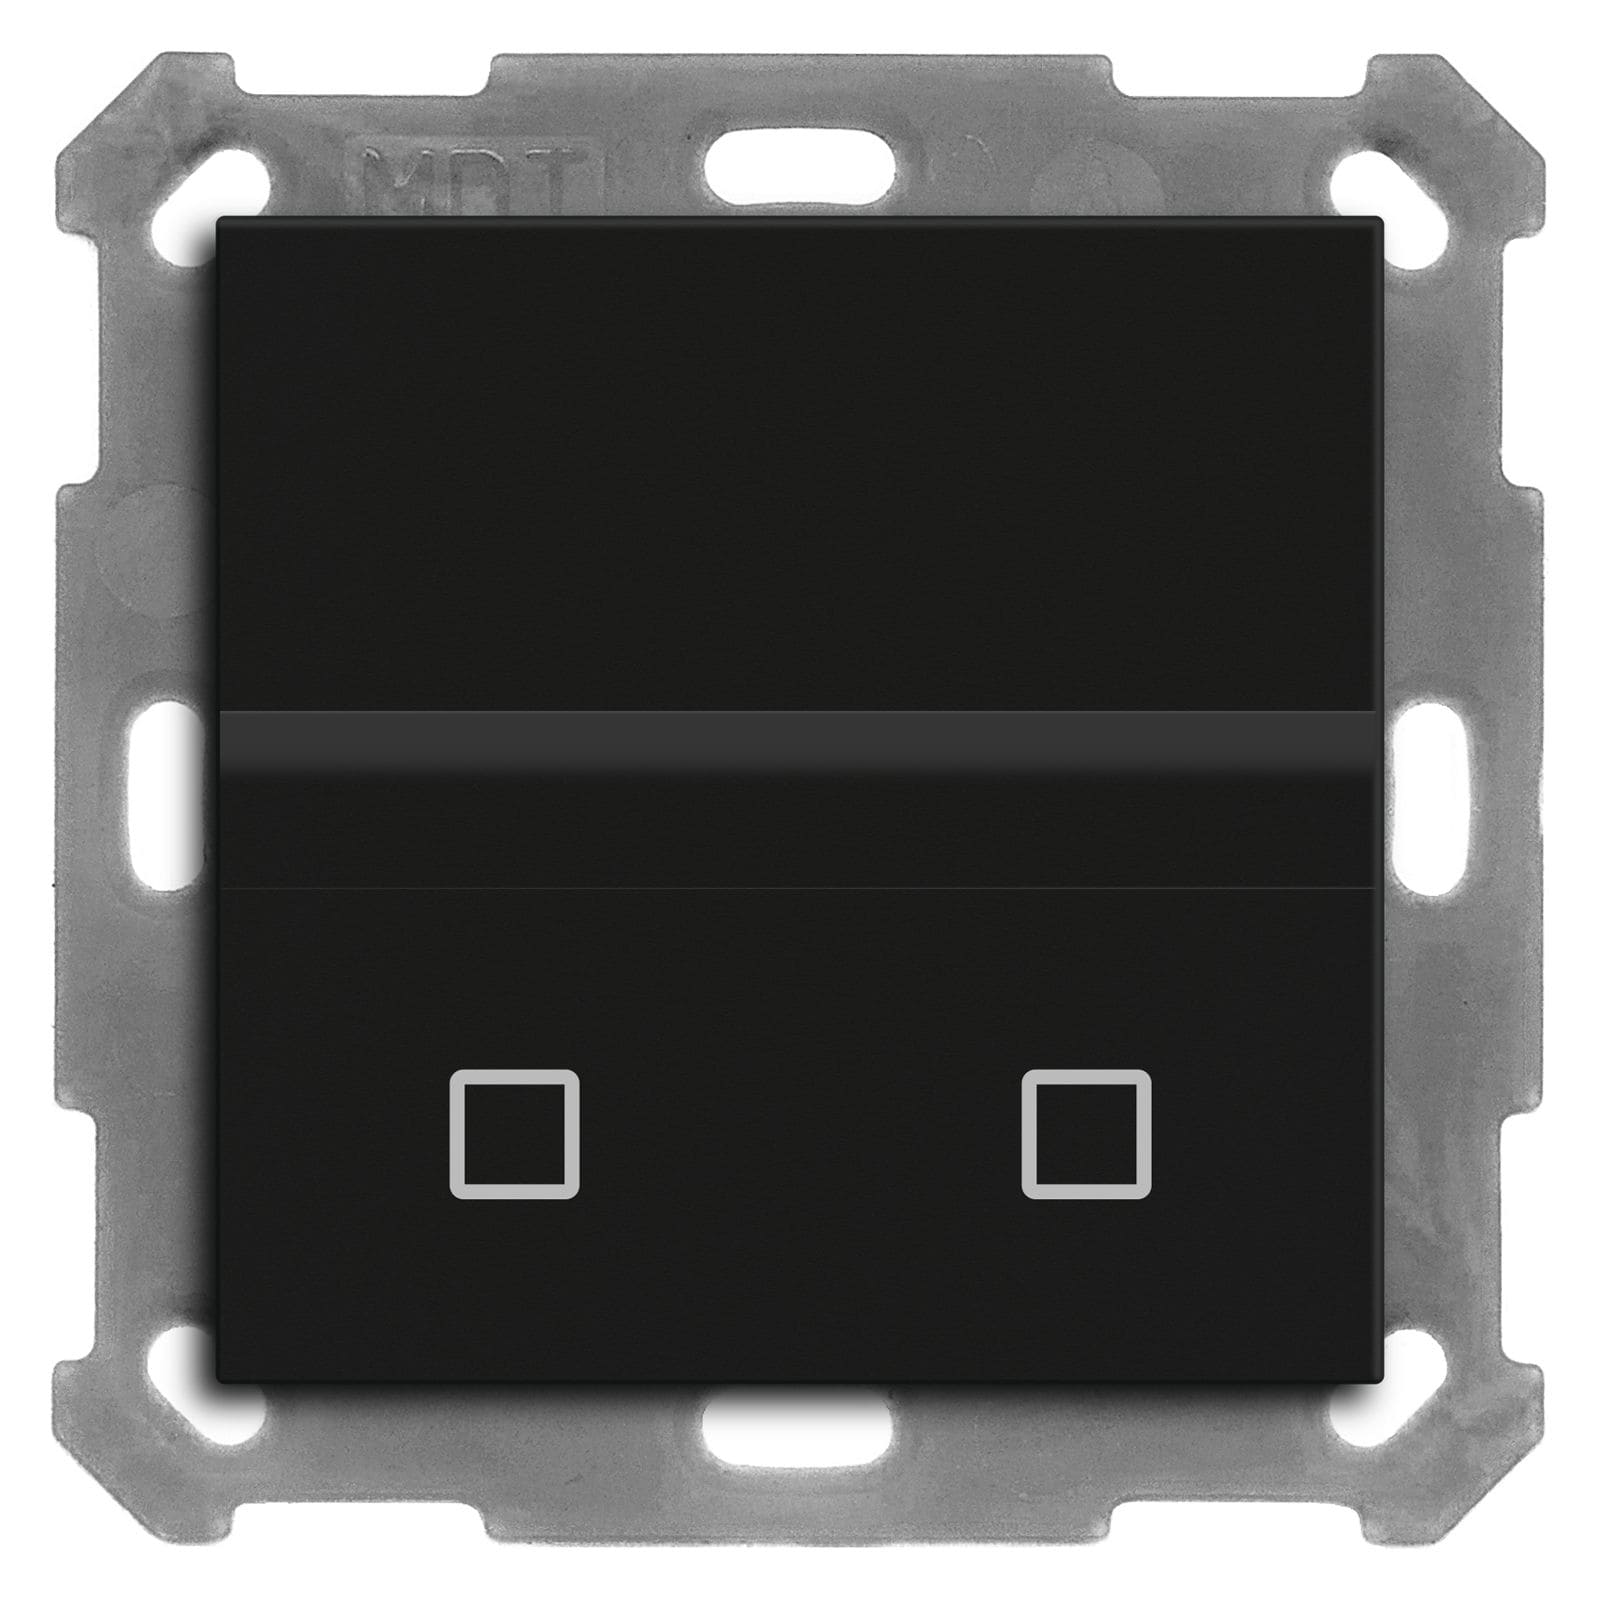 MDT SCN-BWM55T06.02 KNX Bewegungsmelder/Automatik Schalter 55 mit Temperatursensor, Schwarz matt